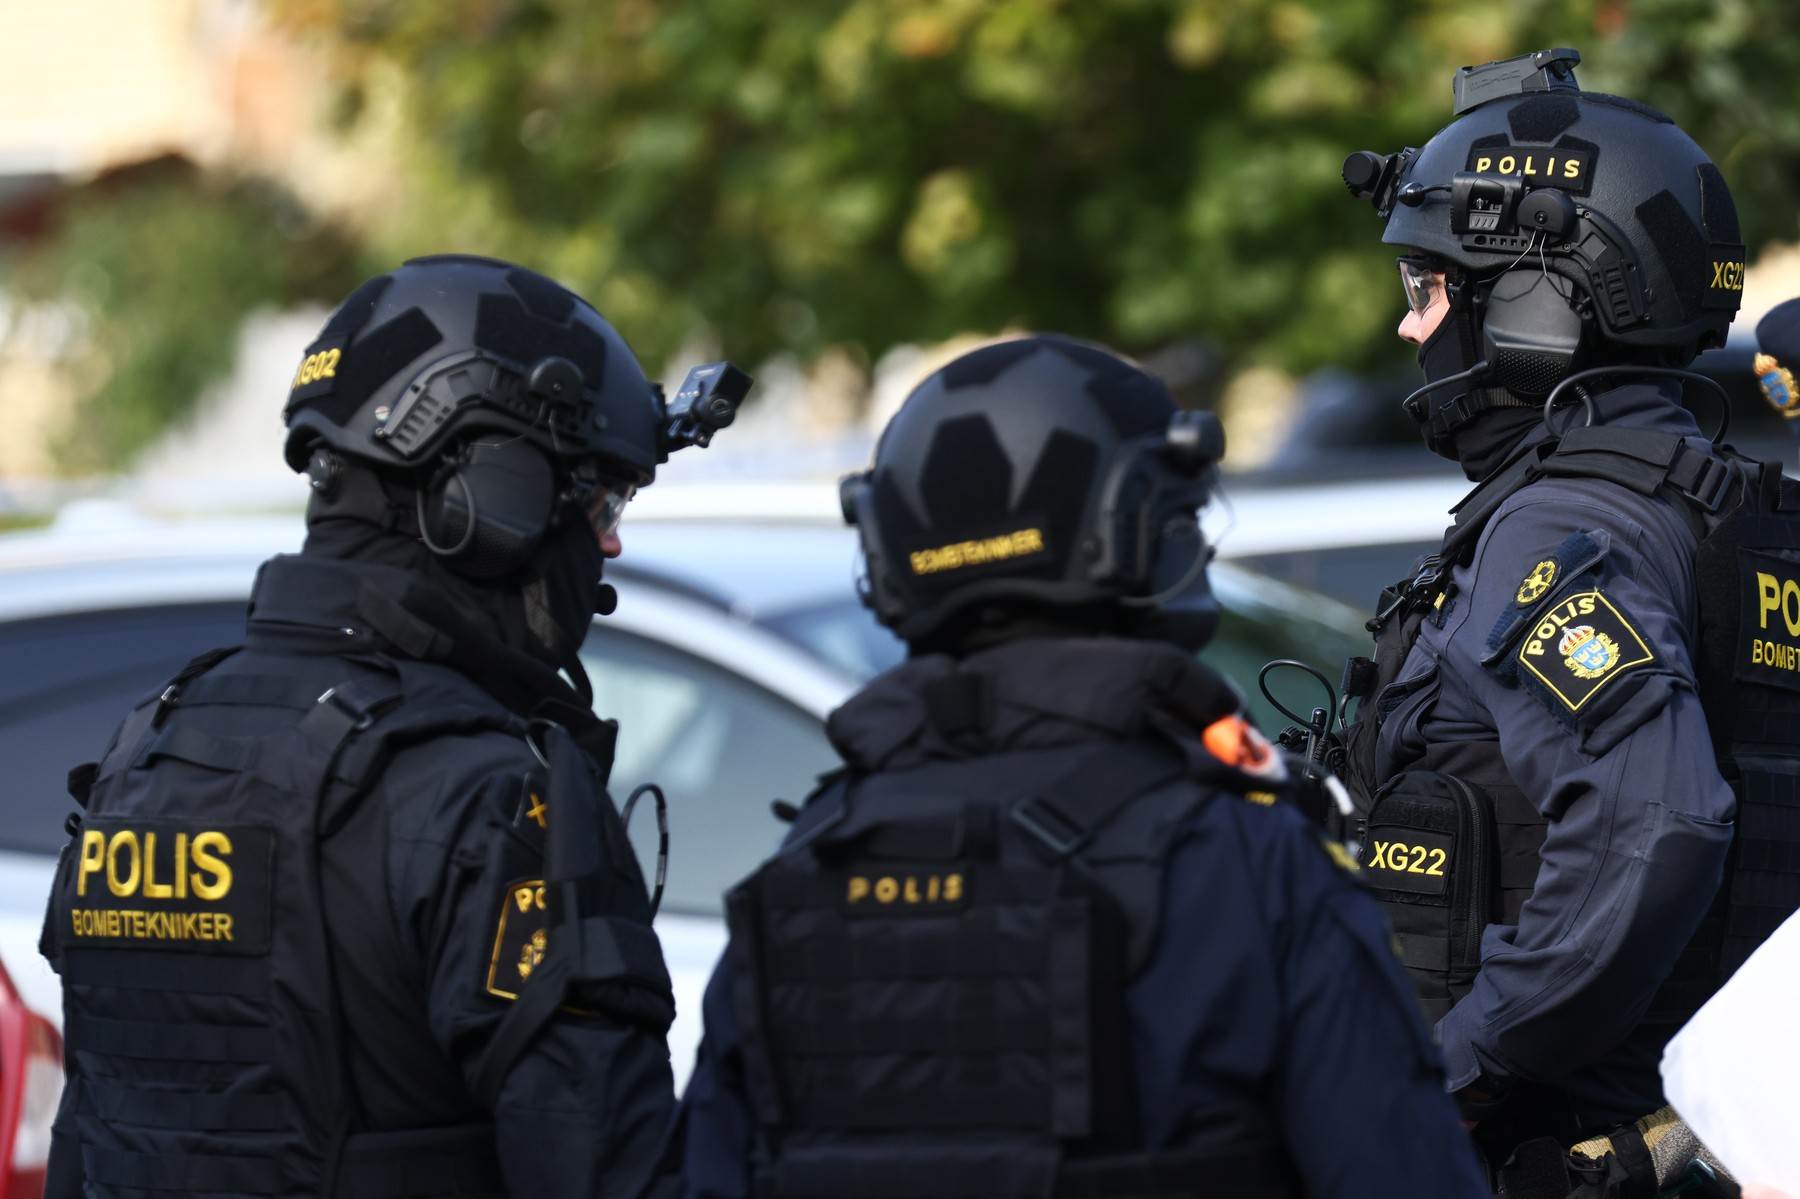  Prekinut meč Belgija - Švedska nakon ubistva najmanje dvije osobe u Briselu 